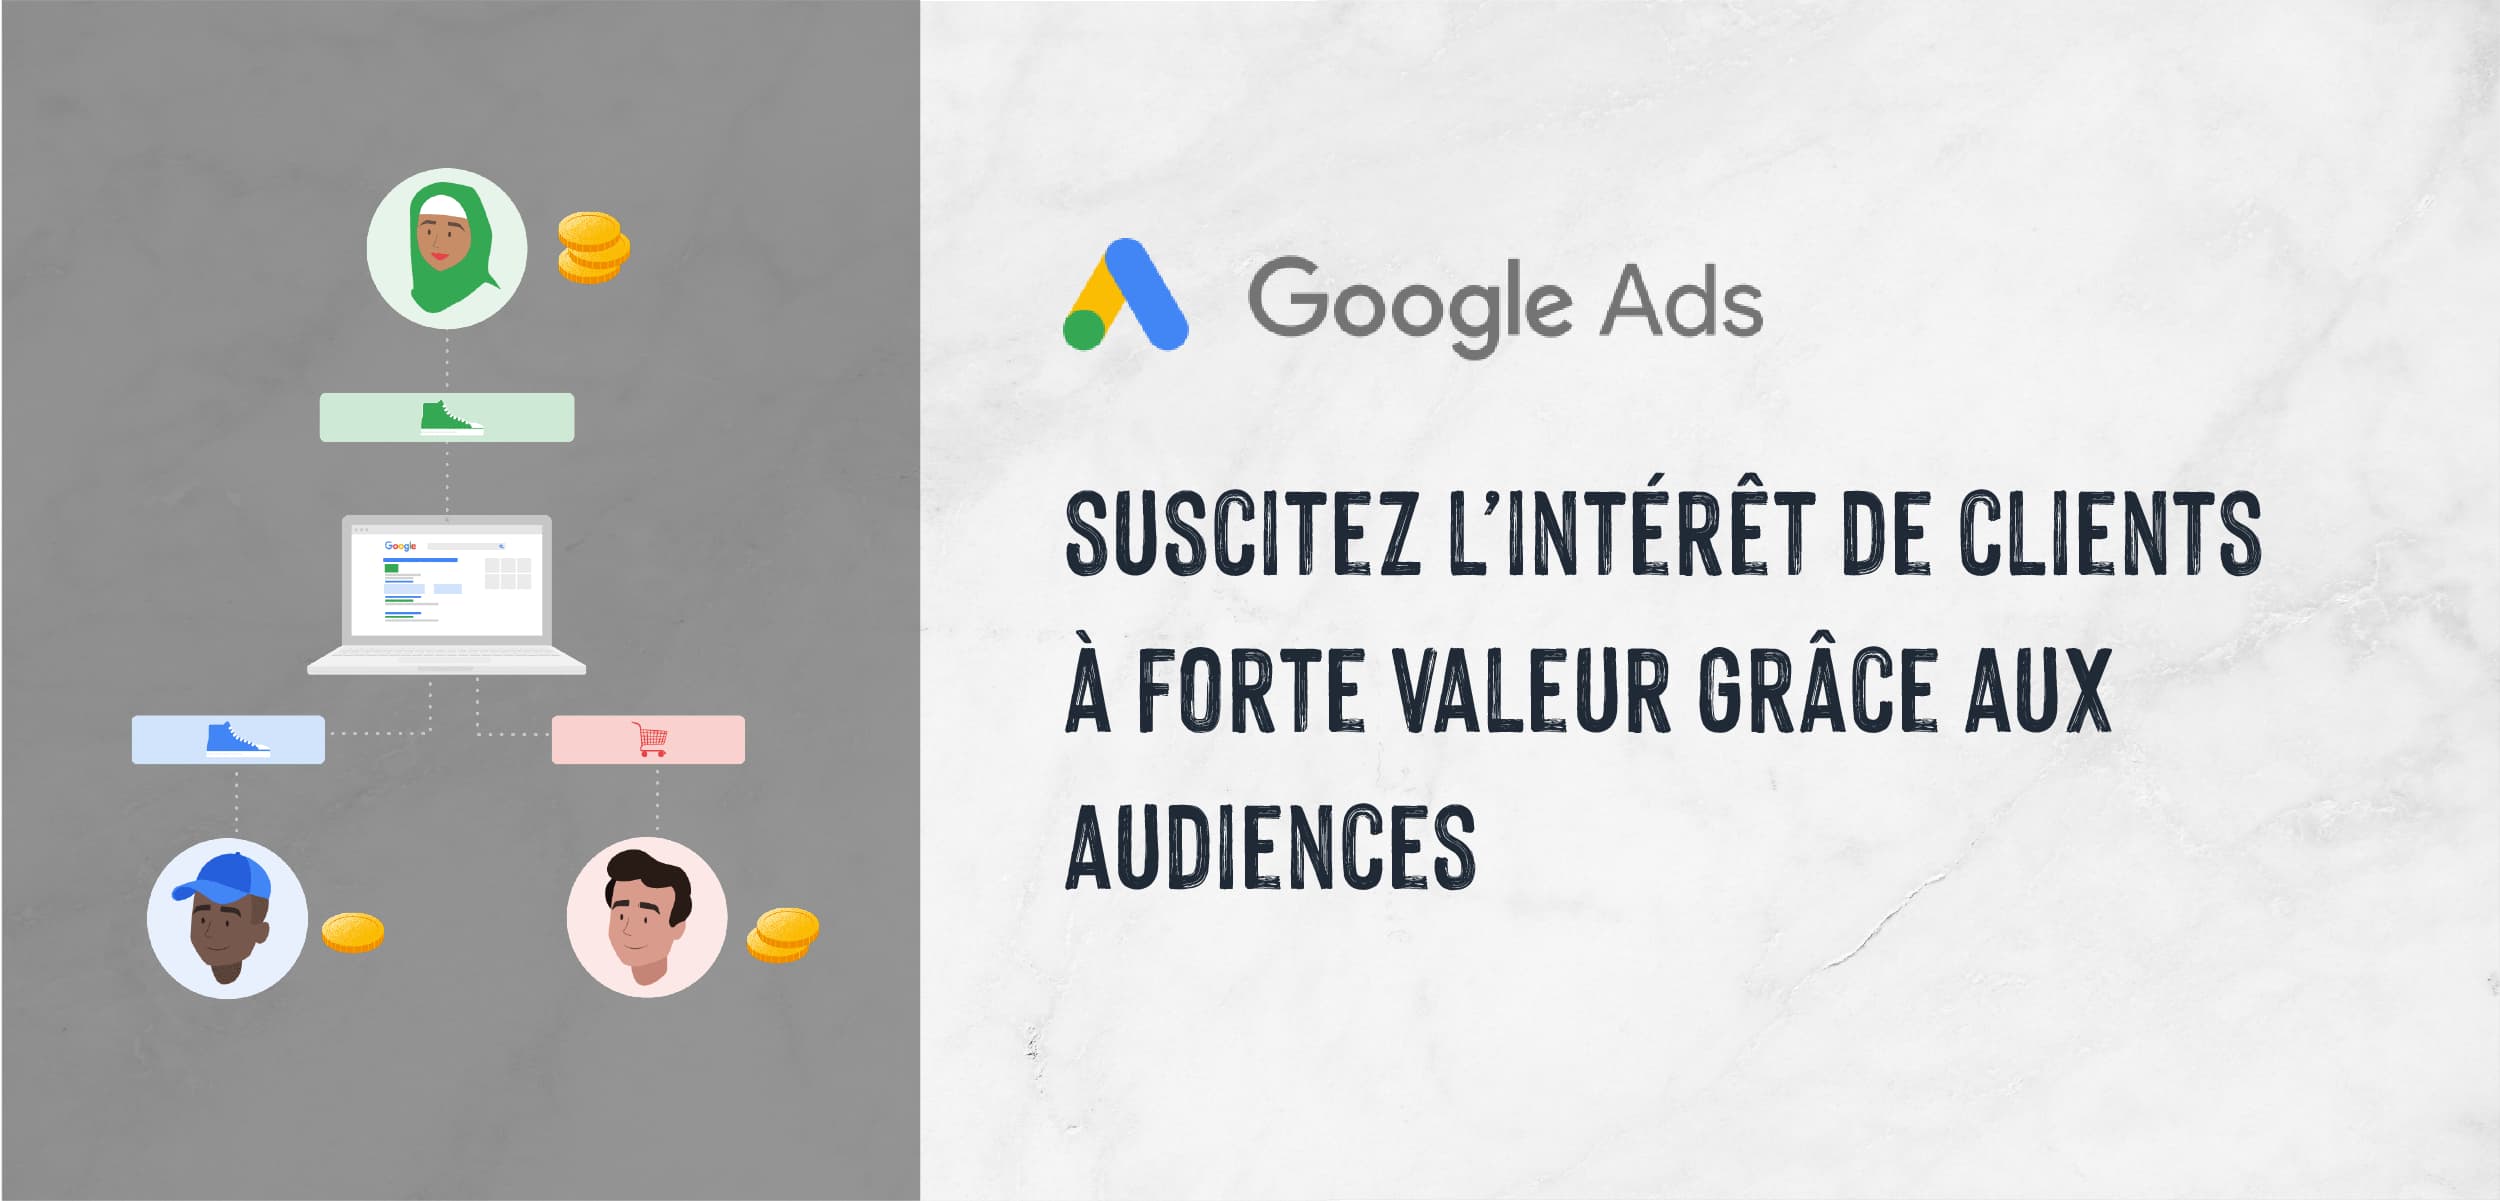 |Search Ads| Suscitez l'intérêt de clients à forte valeur grâce aux audiences